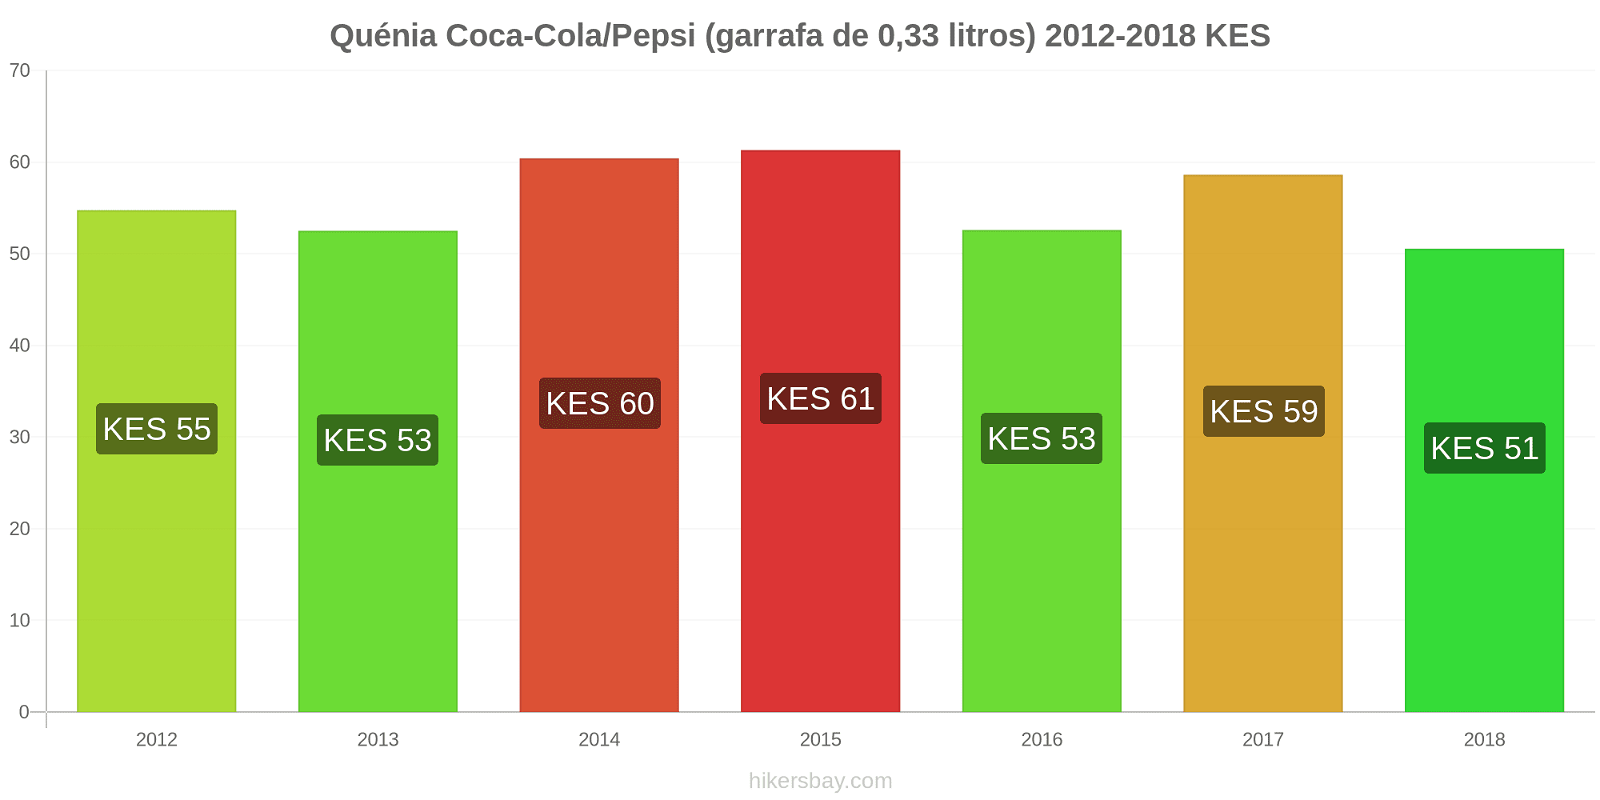 Quénia mudanças de preços Coca-Cola/Pepsi (garrafa de 0.33 litros) hikersbay.com